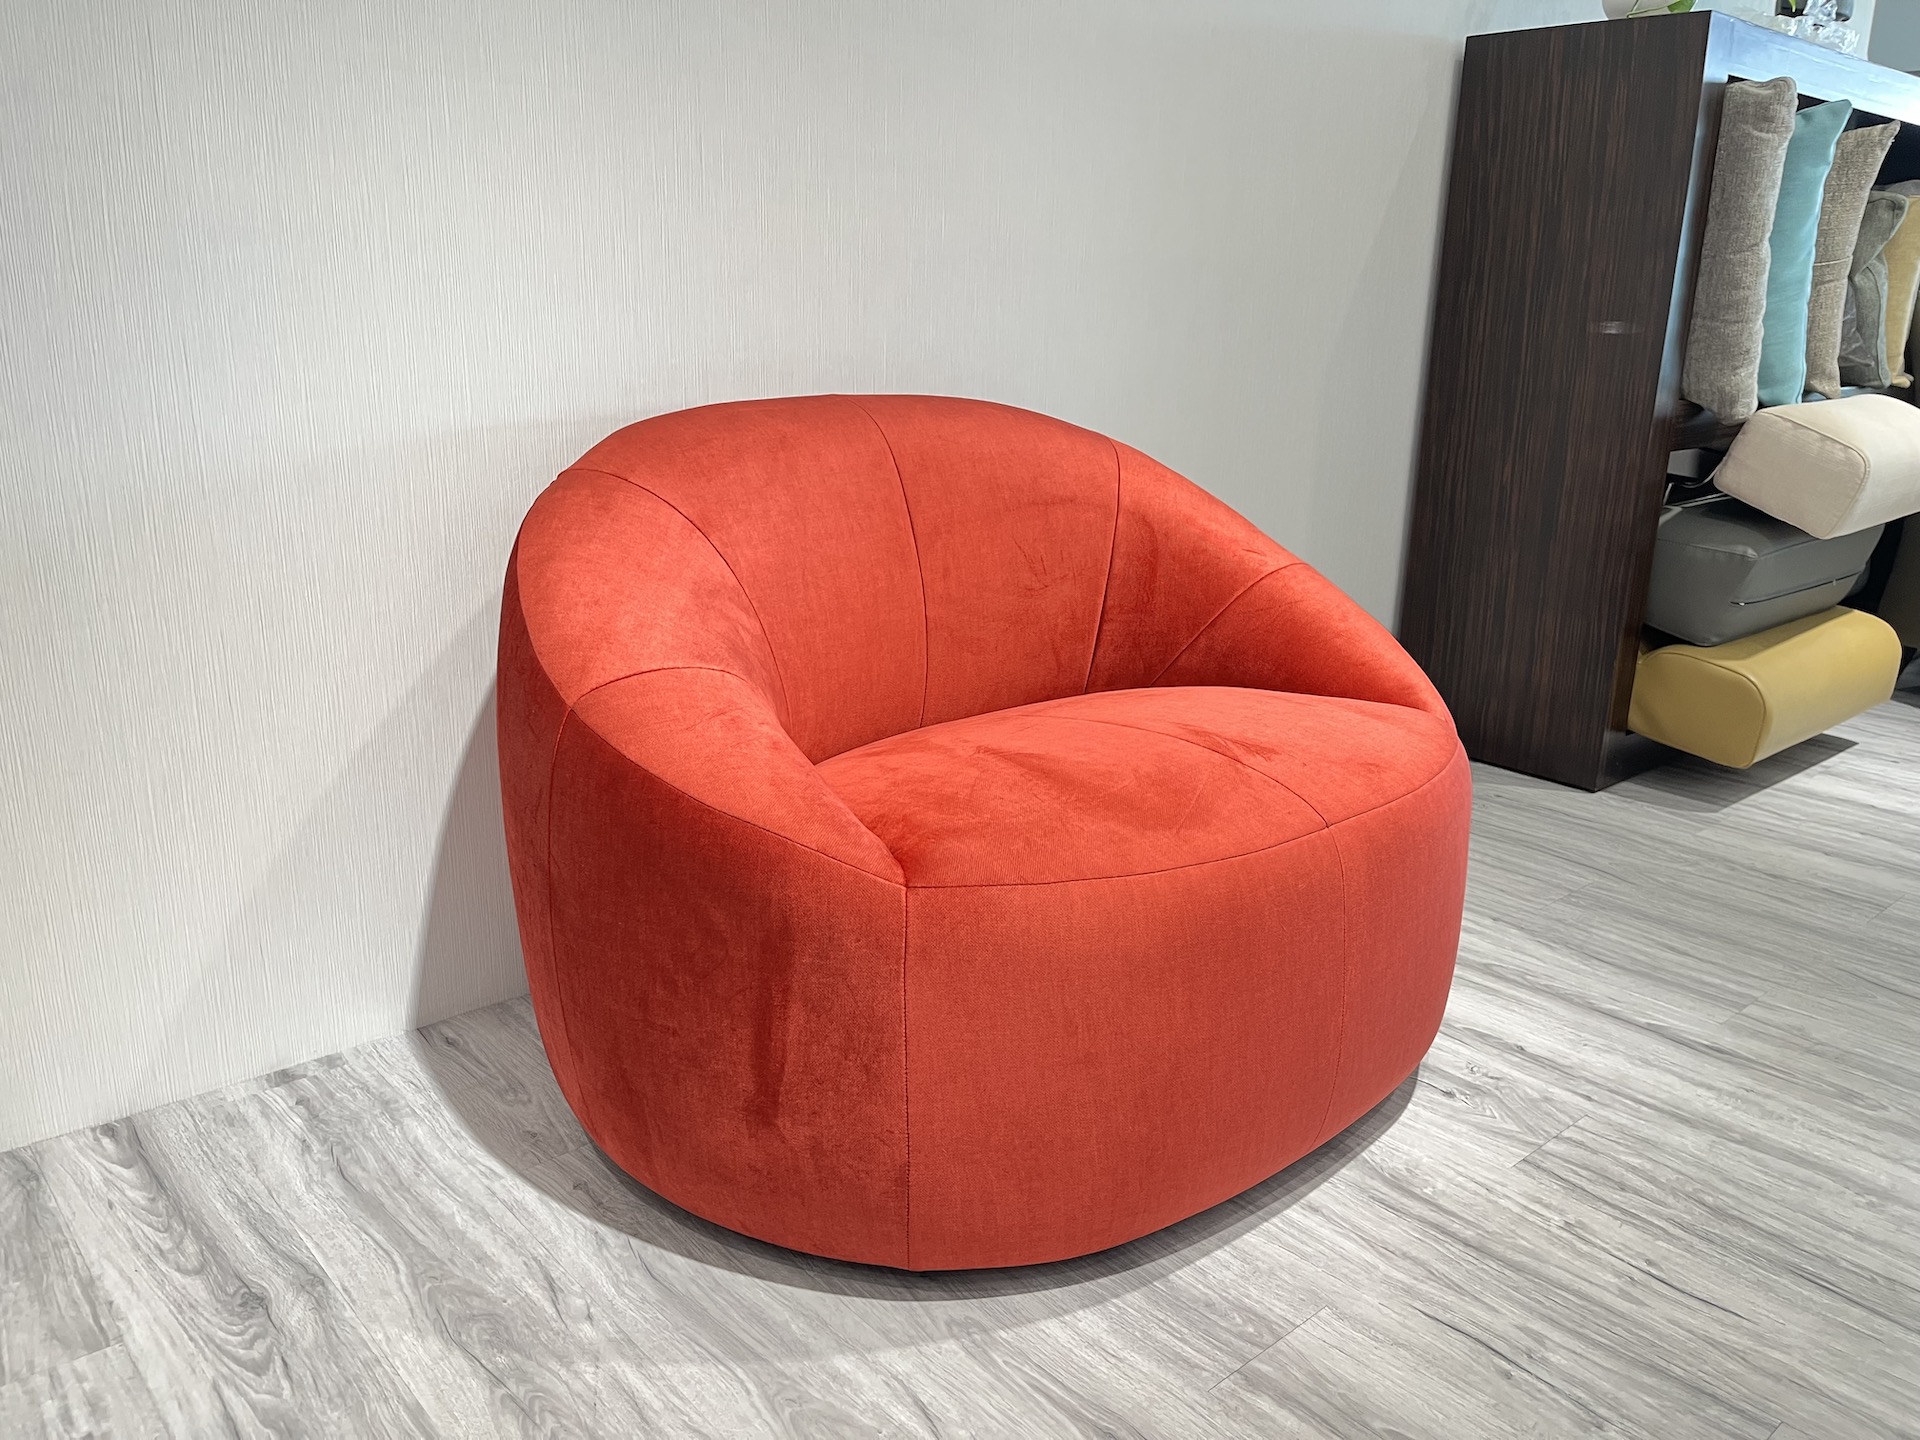 【客戶案例分享】單人弧形造型沙發分享